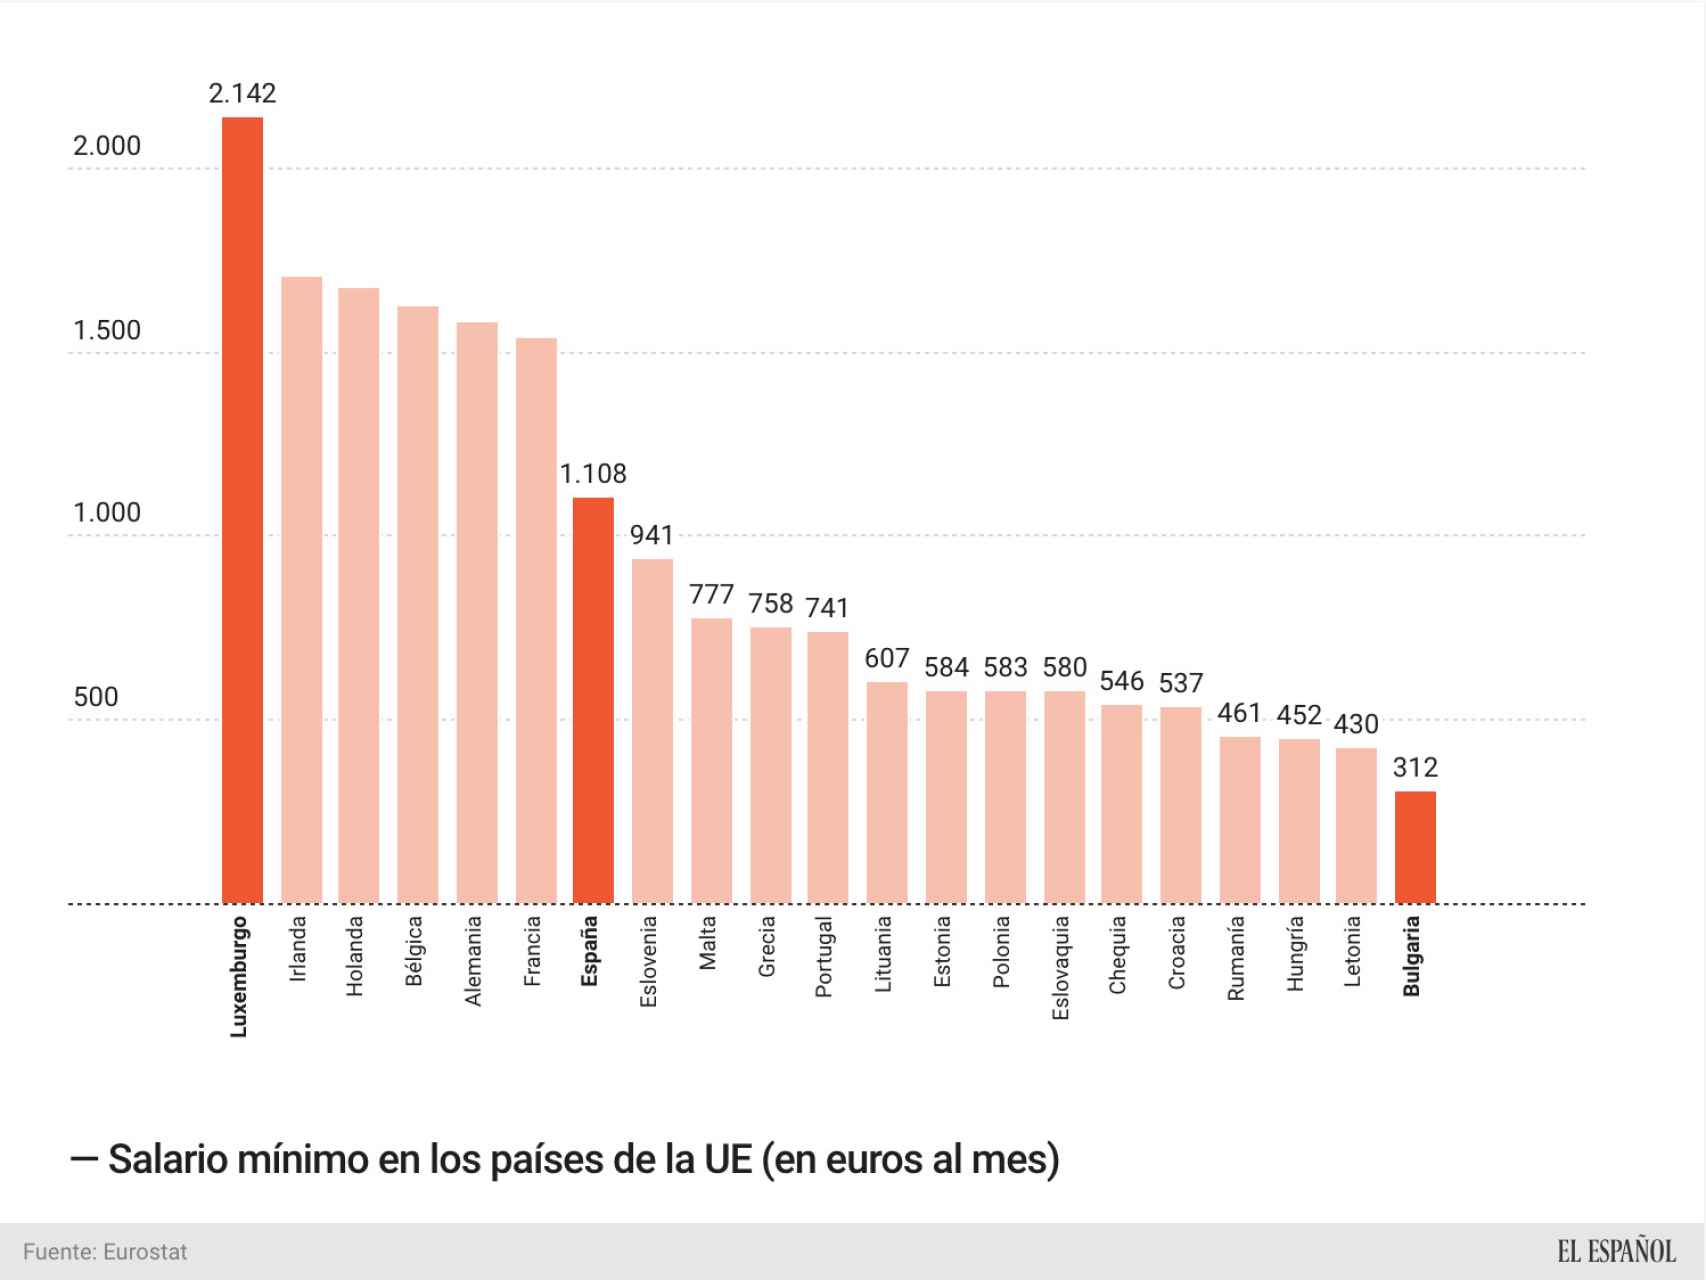 Salario mínimo en los países de la UE (julio de 2020)